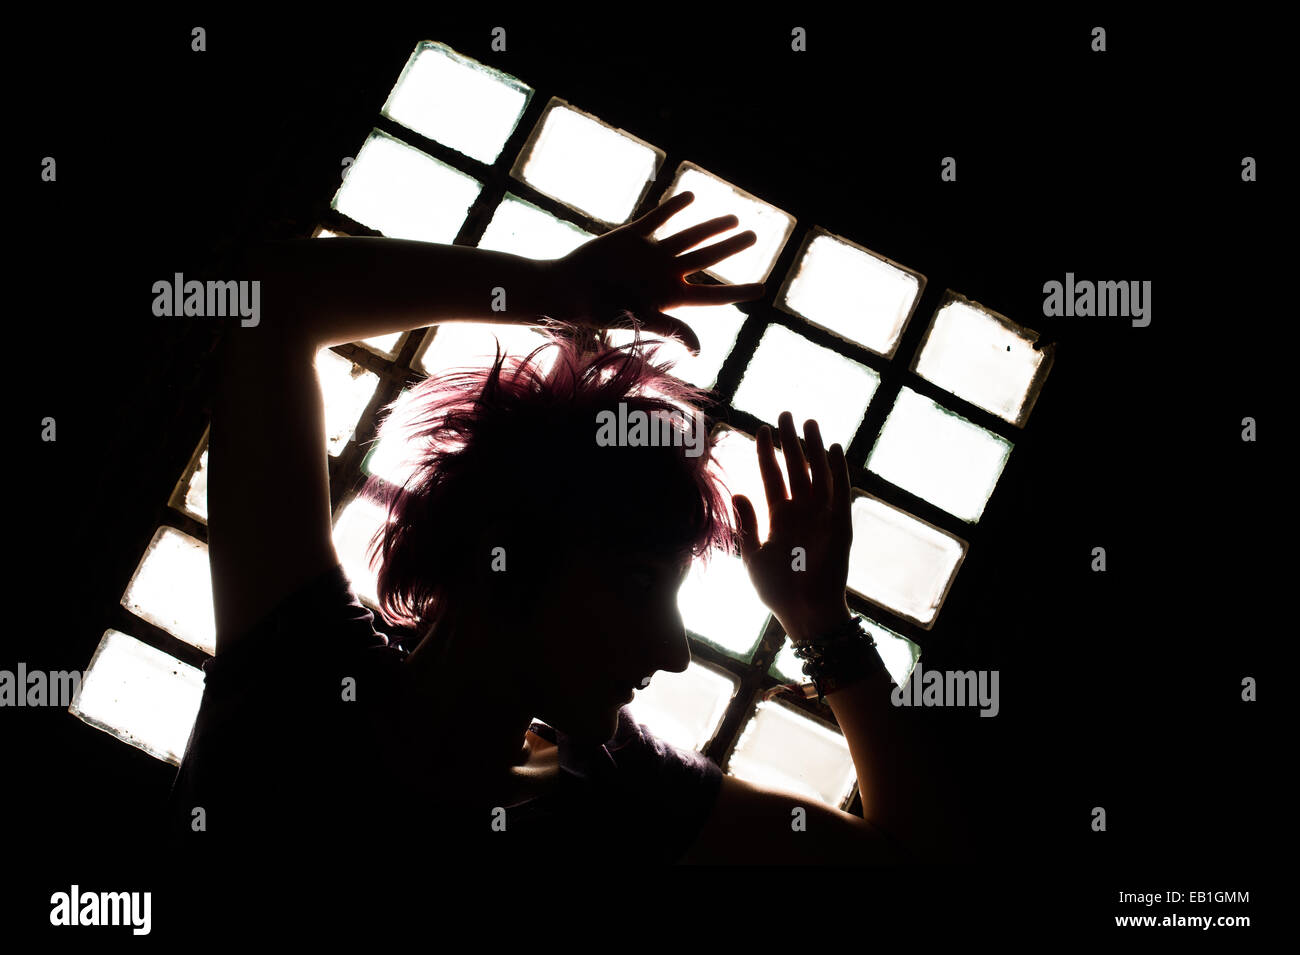 Une jeune adolescente femme prisonnière confinée dans une cellule de prison type location avec la lumière pénétrant par une fenêtre barrée Banque D'Images